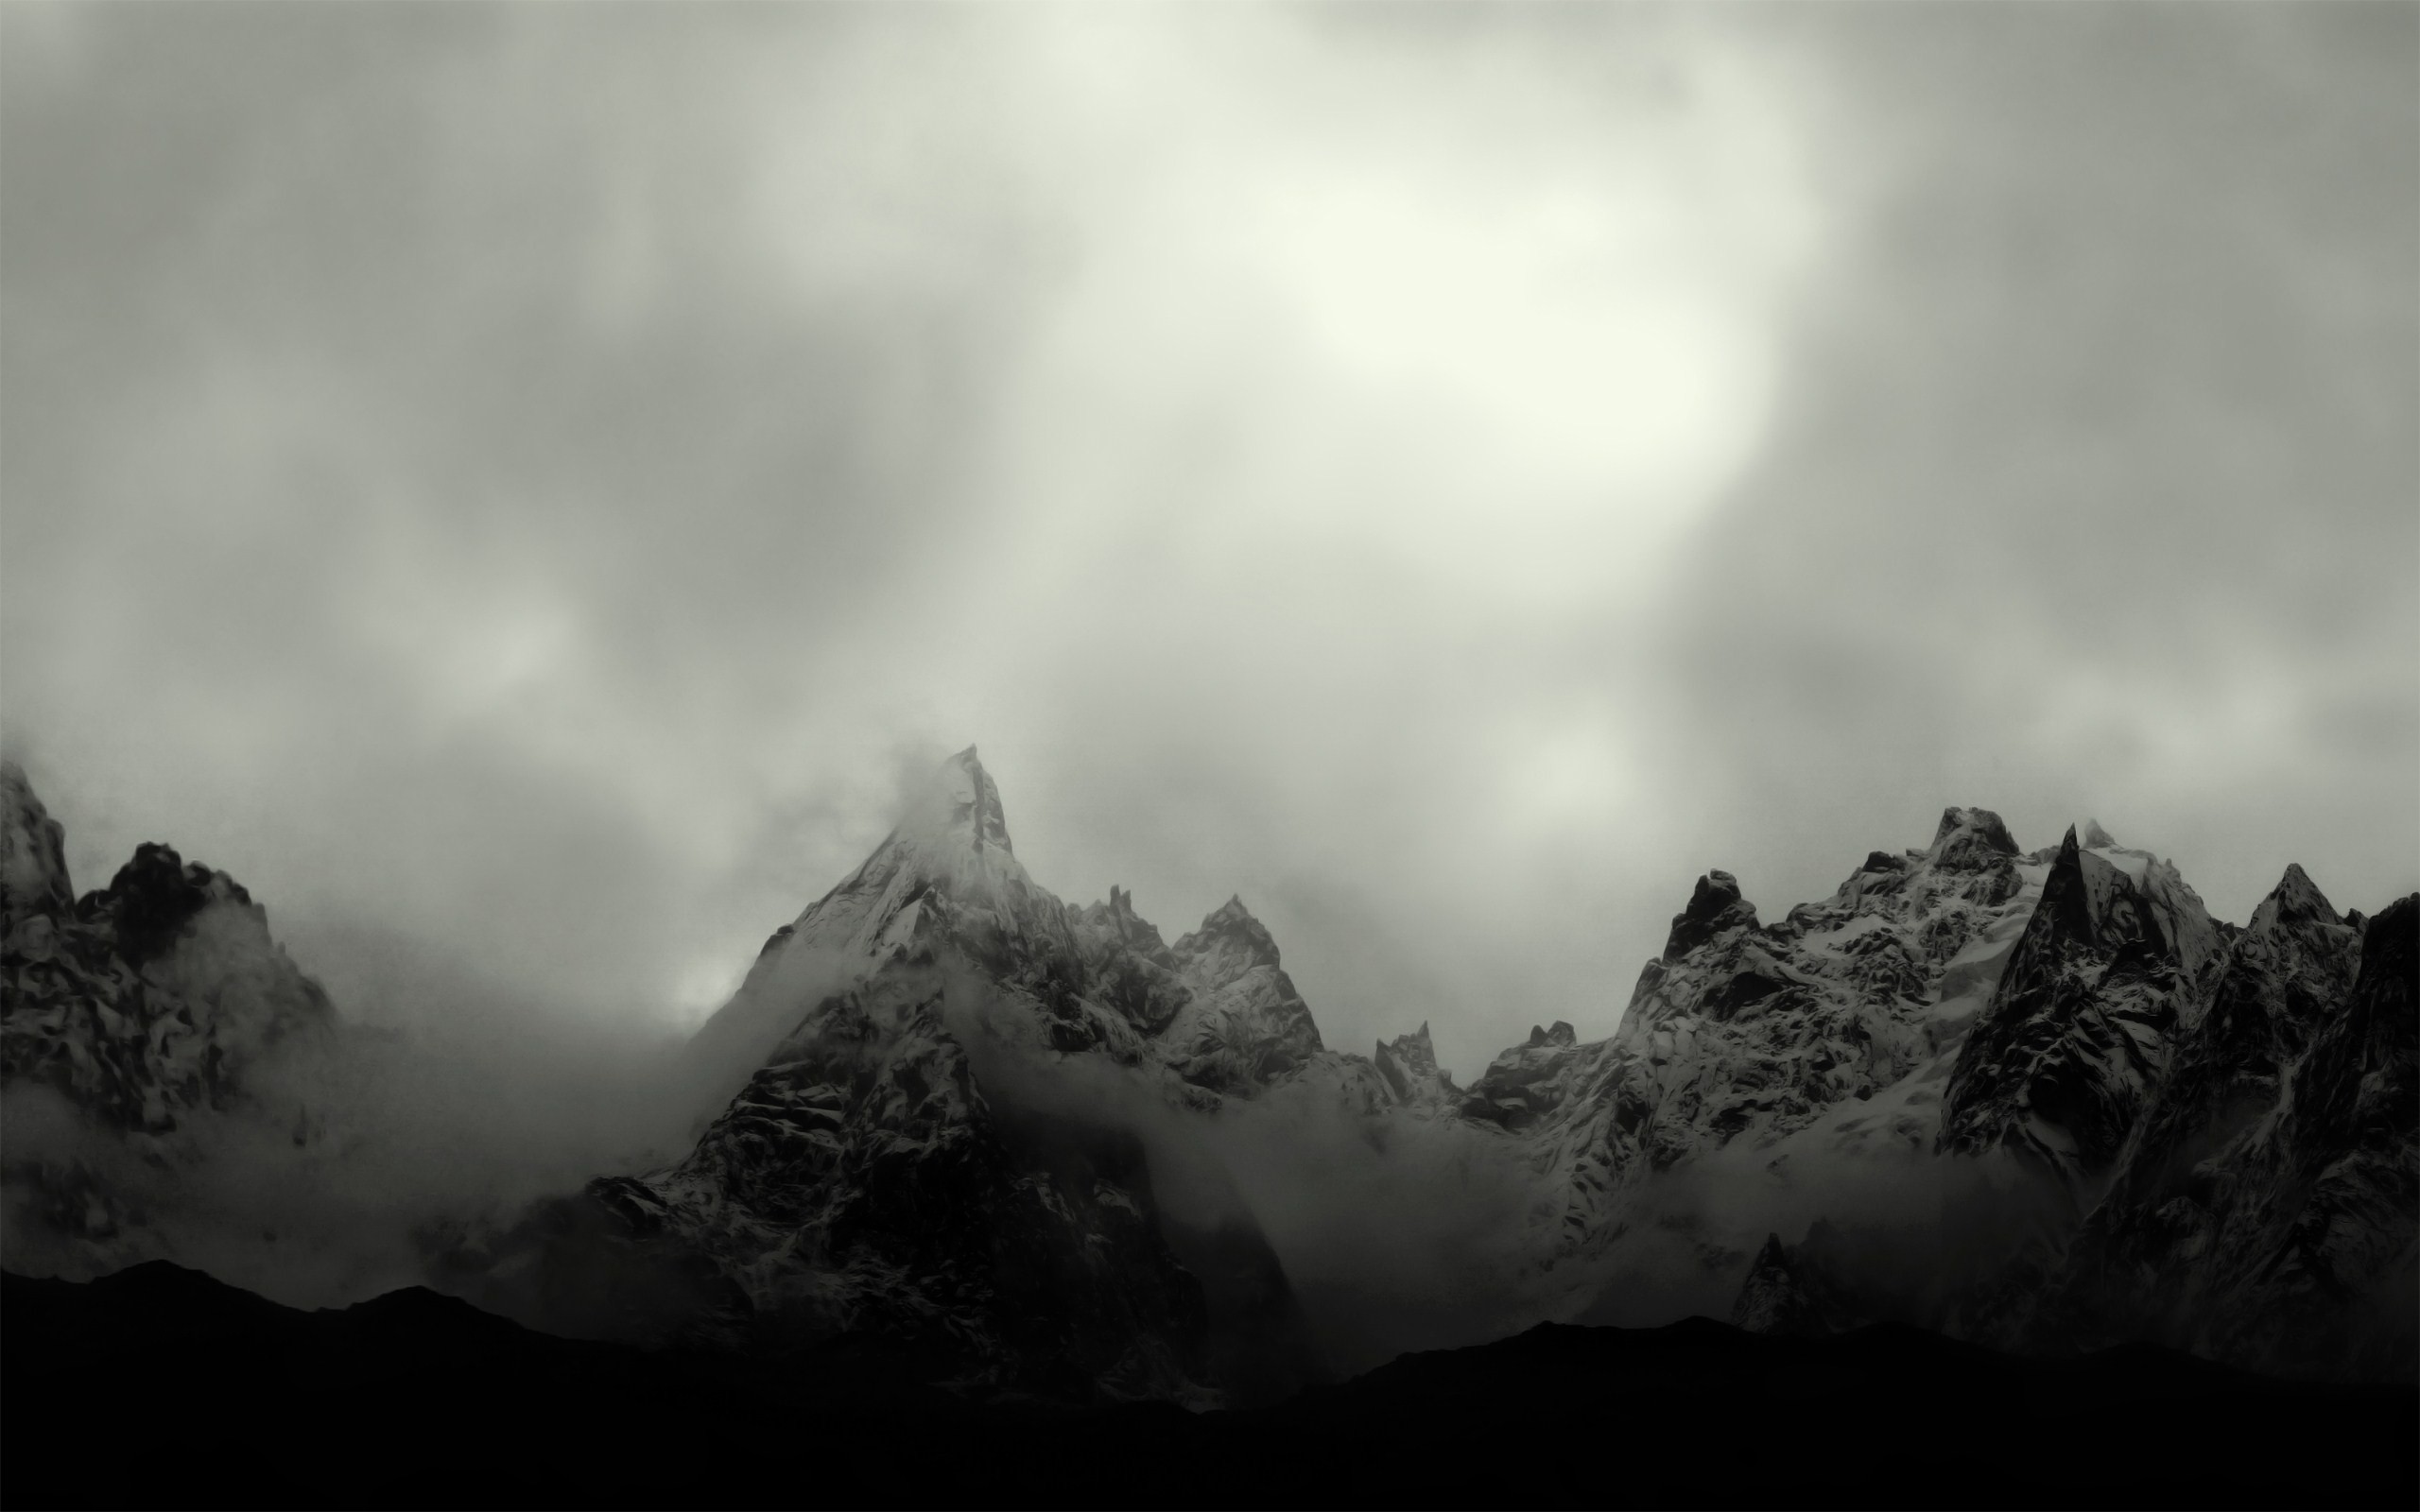 General 2560x1600 photography mist landscape nature mountains monochrome snowy peak